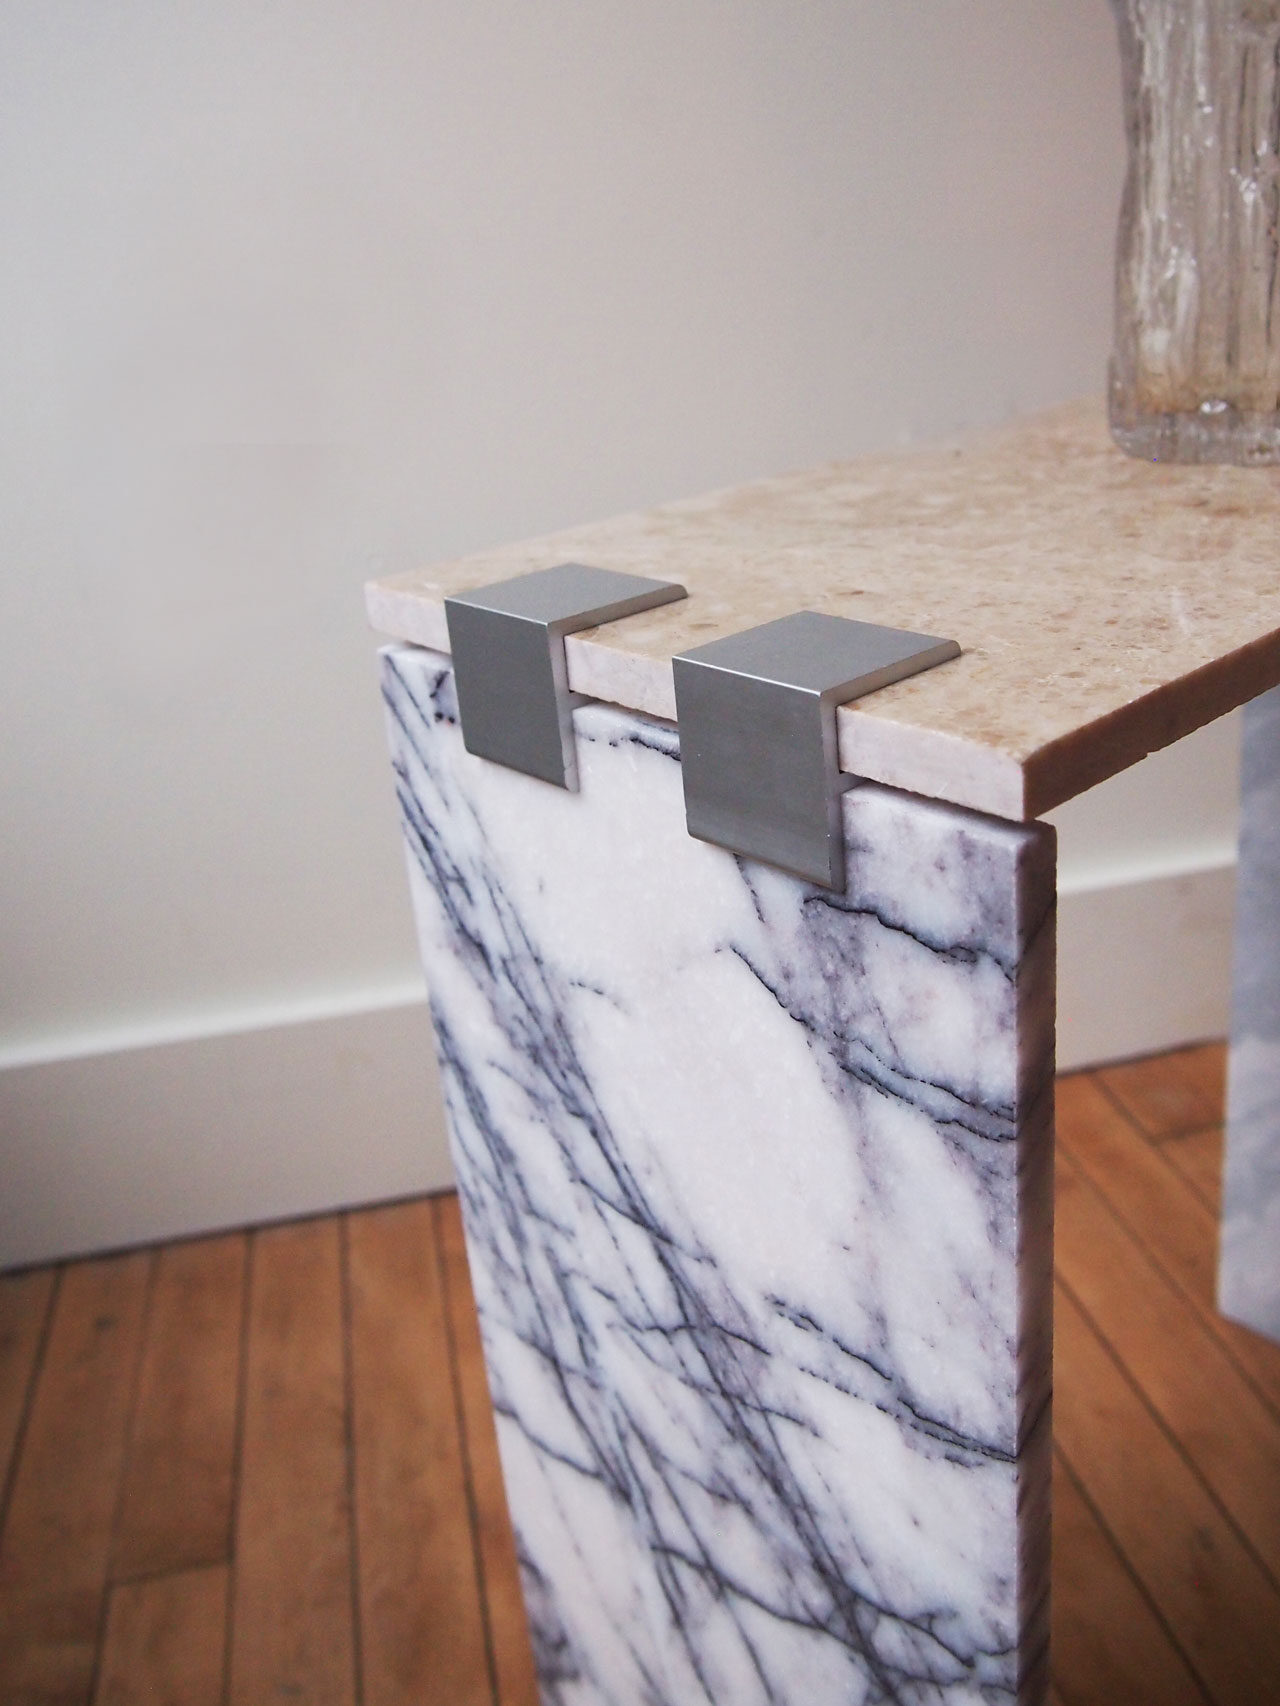 DIY marble tile side table designed by Aandersson